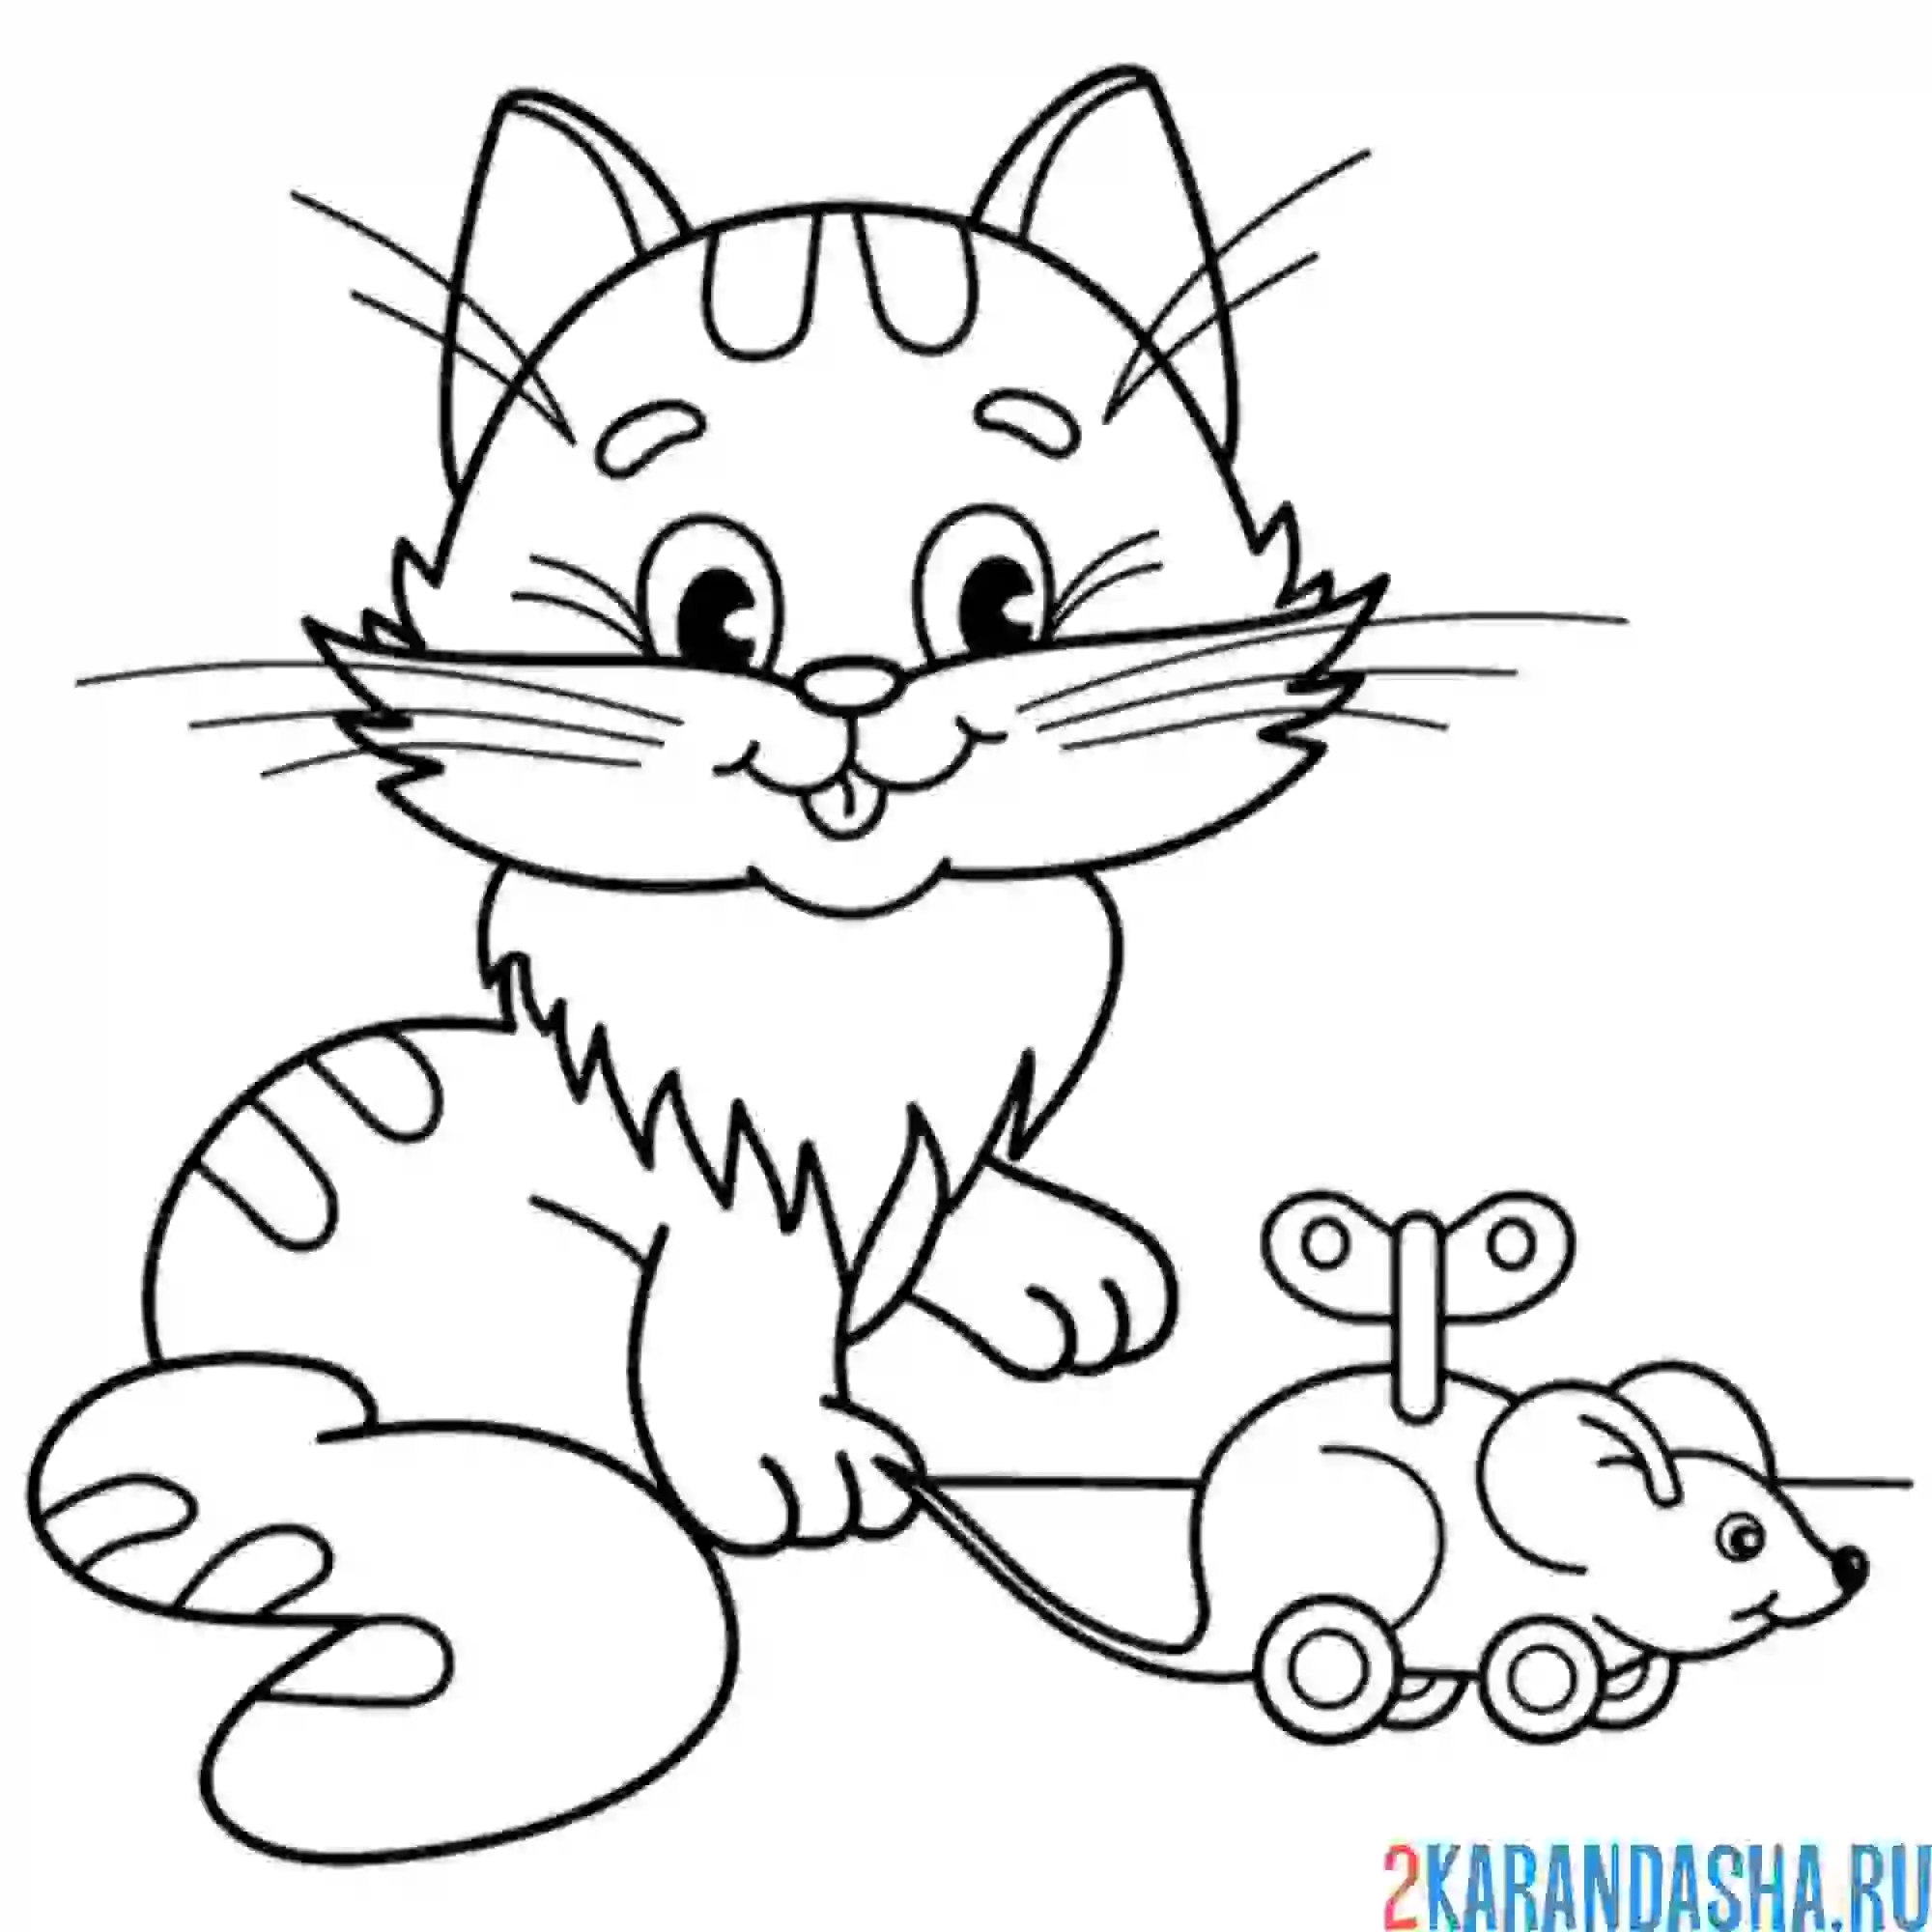 Раскраска котенок для детей 4 5 лет. Раскраска. Котики. Раскраска кот. Котик раскраска для детей. Котенок. Раскраска.